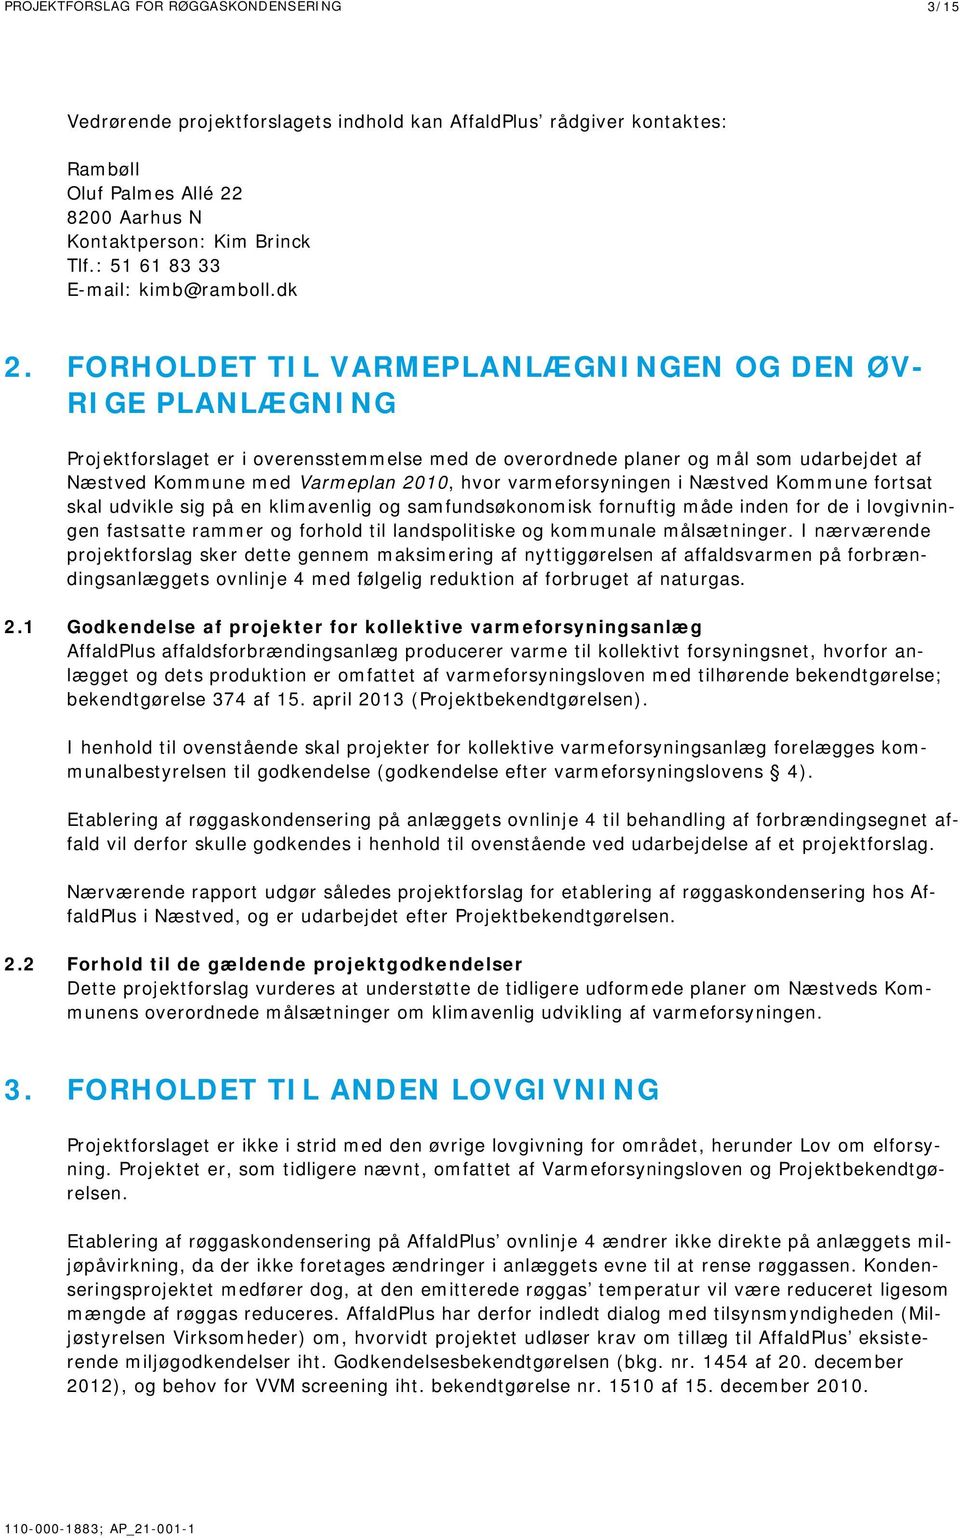 FORHOLDET TIL VARMEPLANLÆGNINGEN OG DEN ØV- RIGE PLANLÆGNING Projektforslaget er i overensstemmelse med de overordnede planer og mål som udarbejdet af Næstved Kommune med Varmeplan 2010, hvor